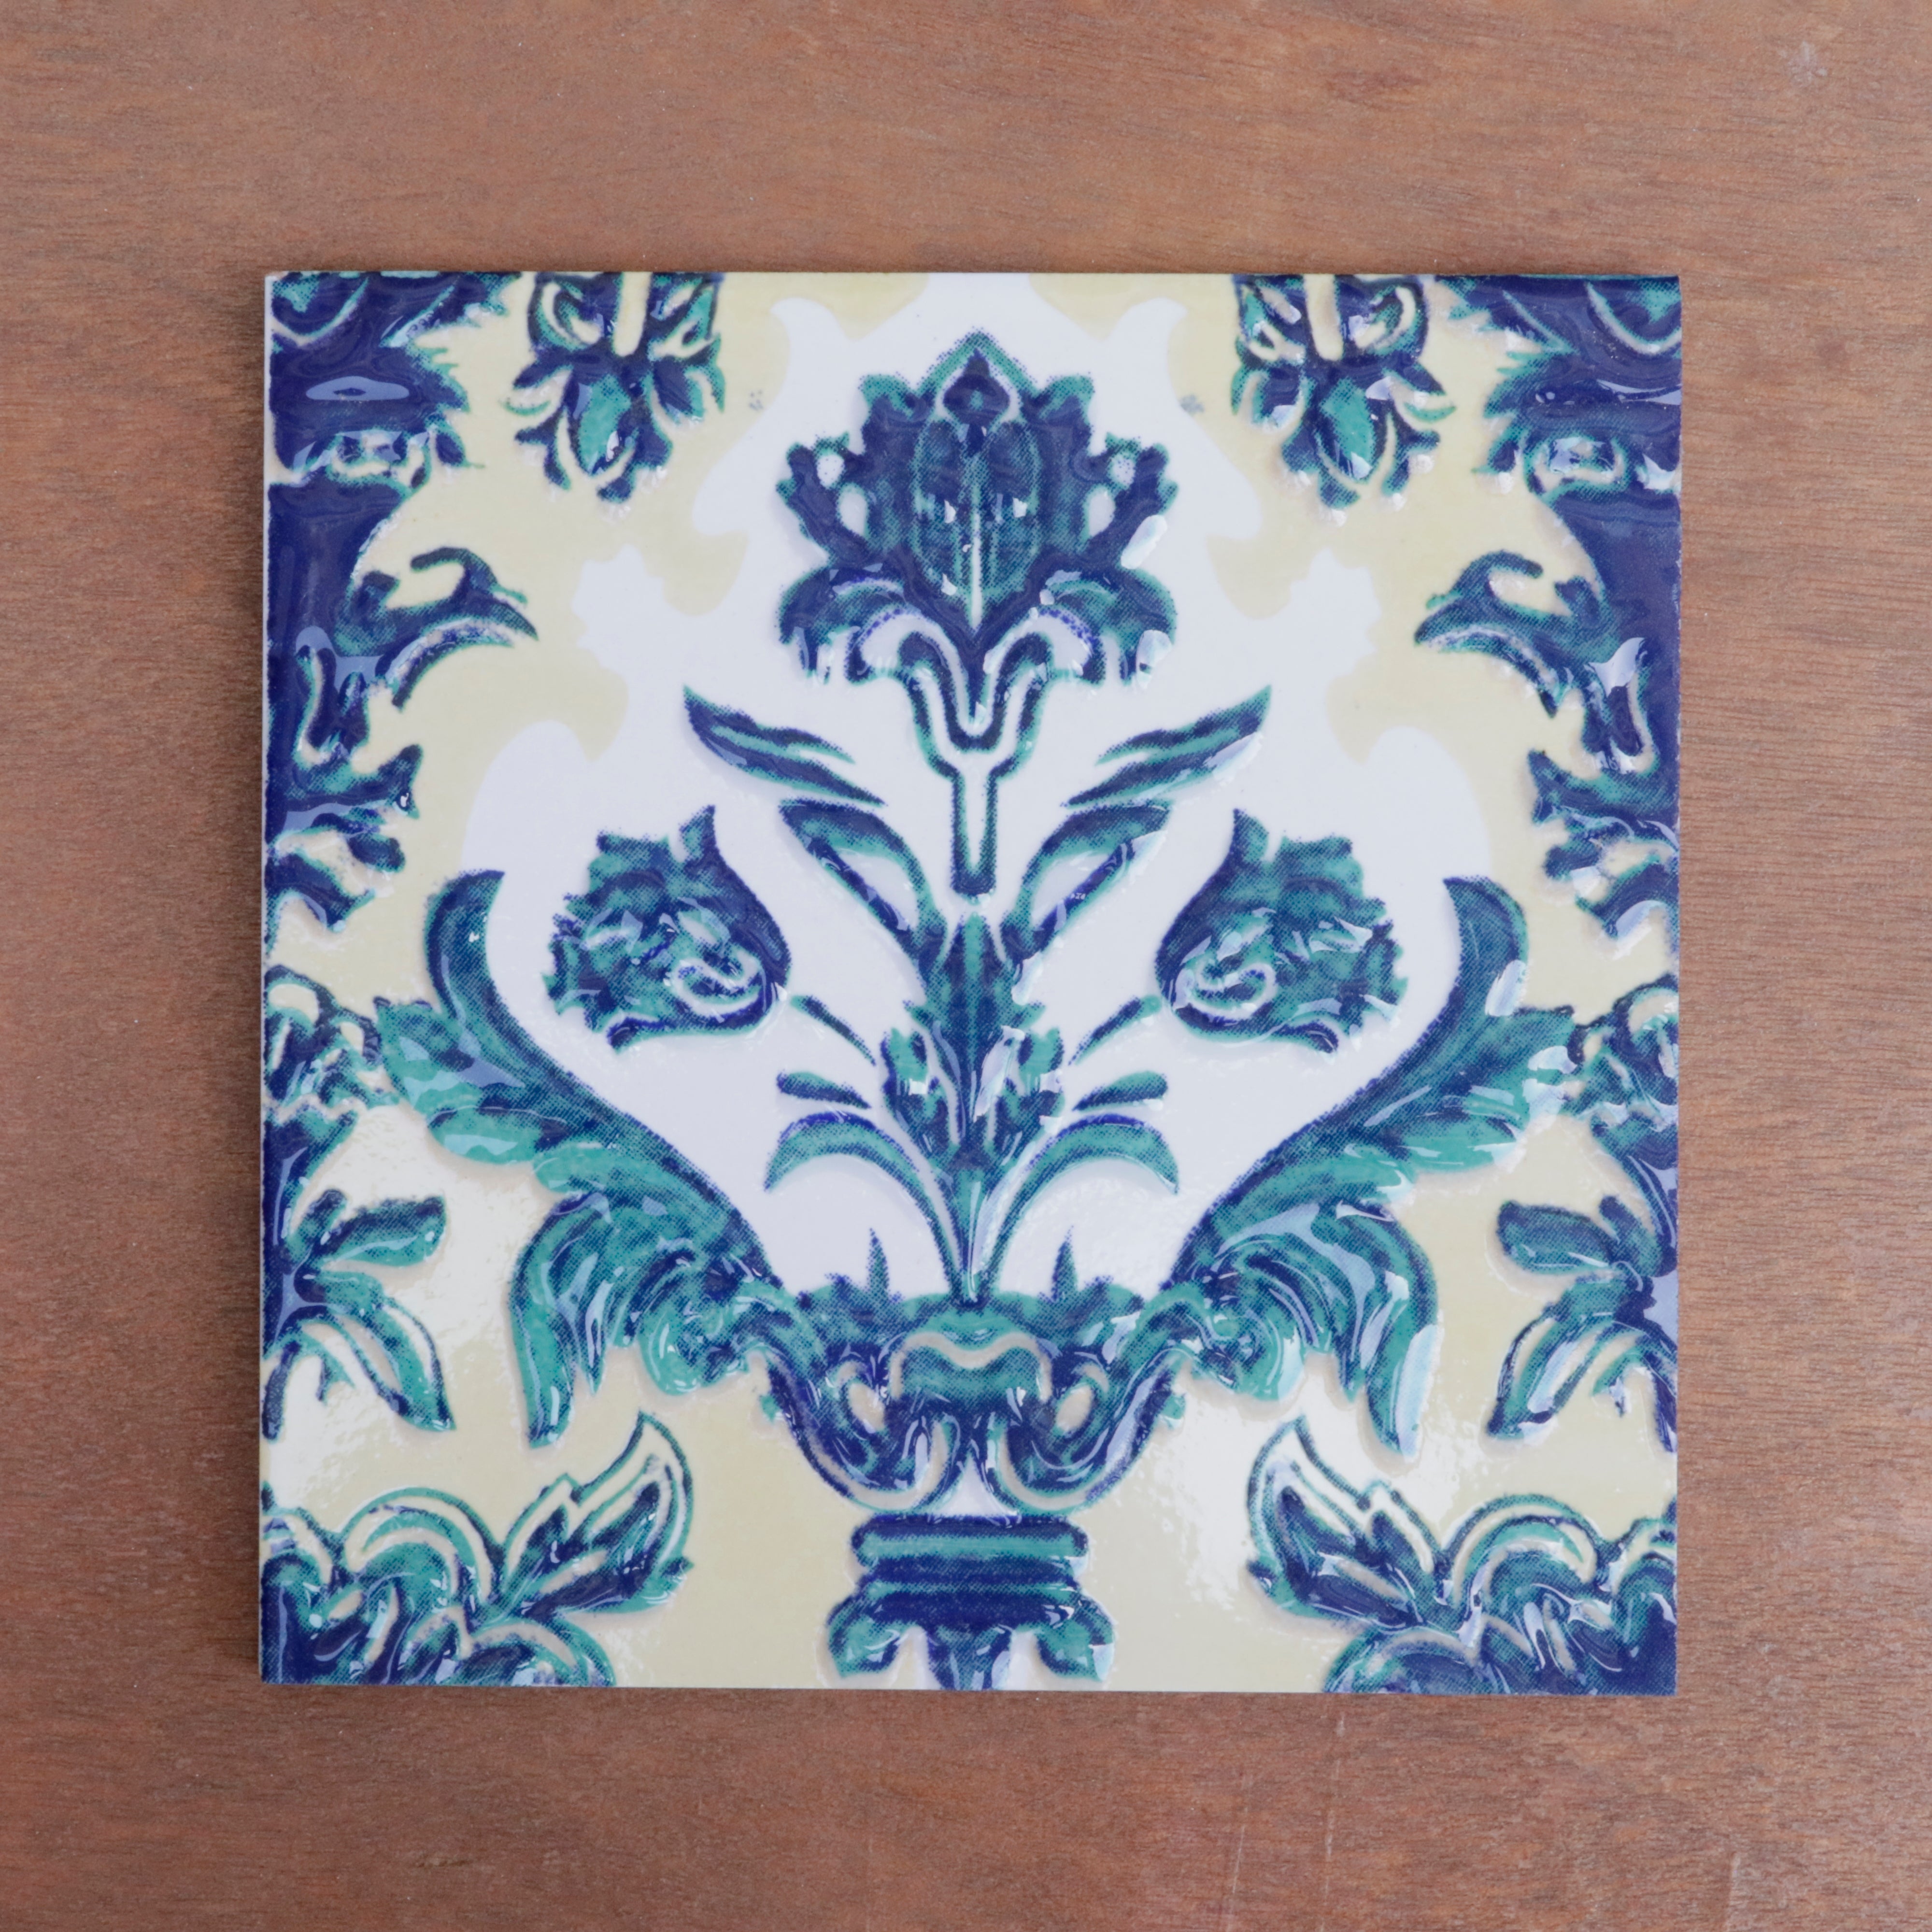 Montage Classic Flowered Designed Ceramic Squre Tile